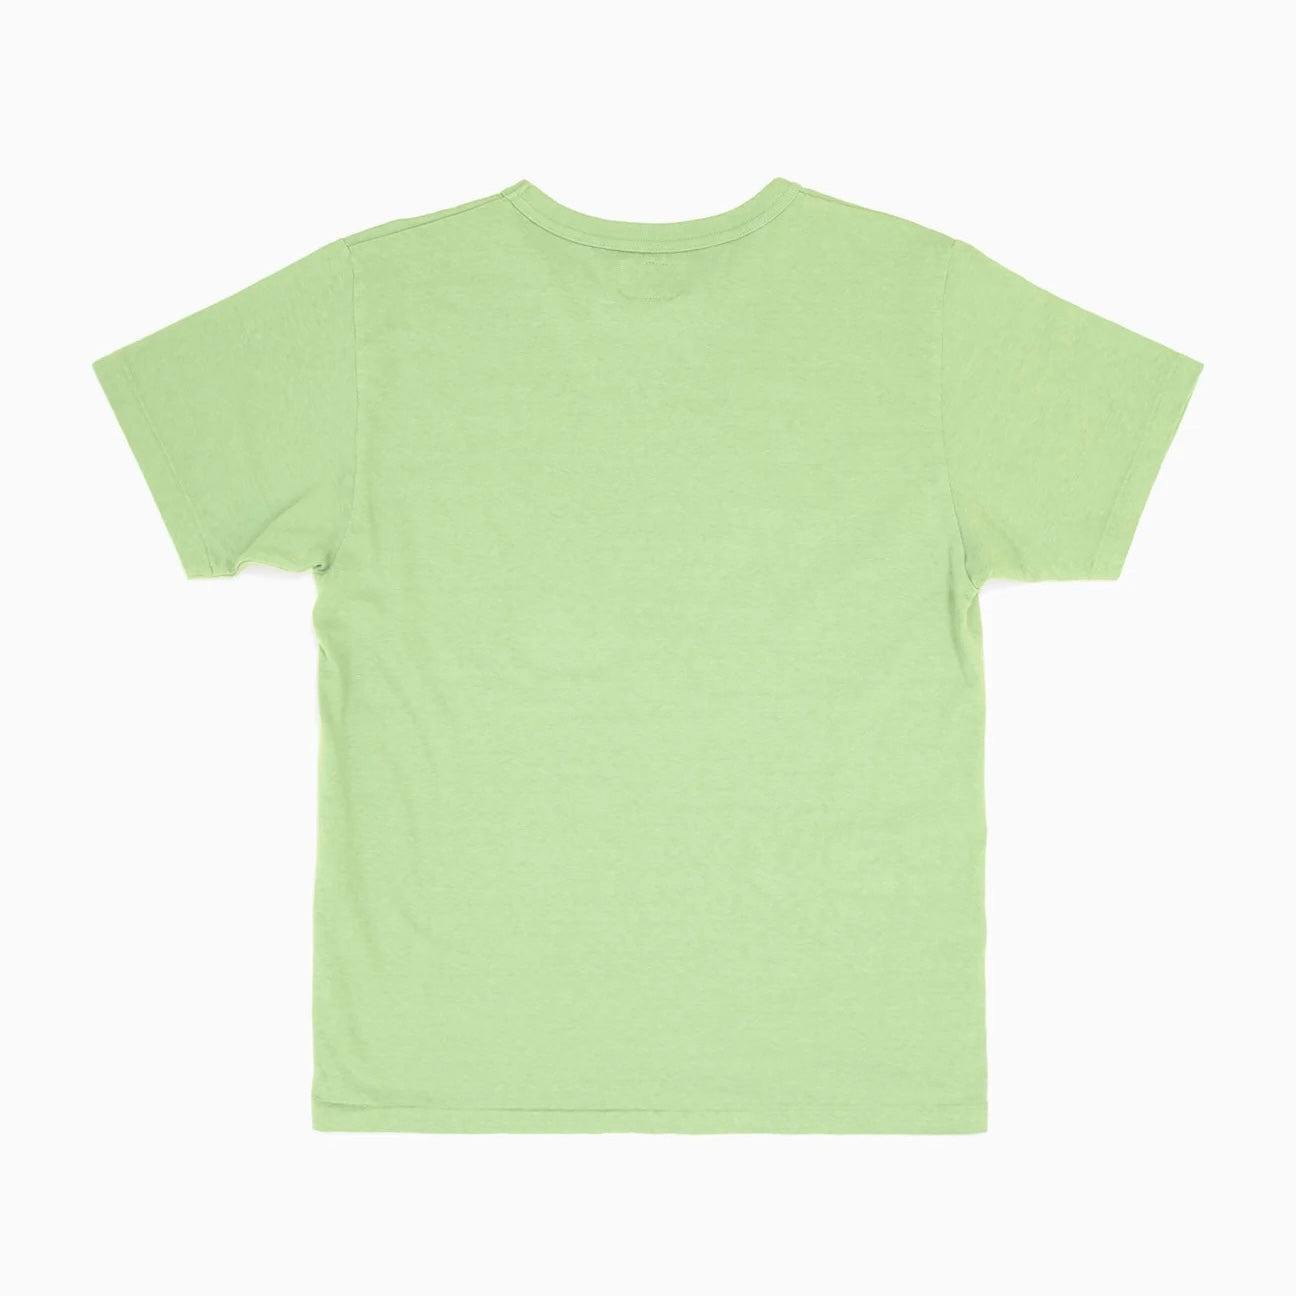 Sunray Sportswear - Haleiwa T-Shirt (Tendril)